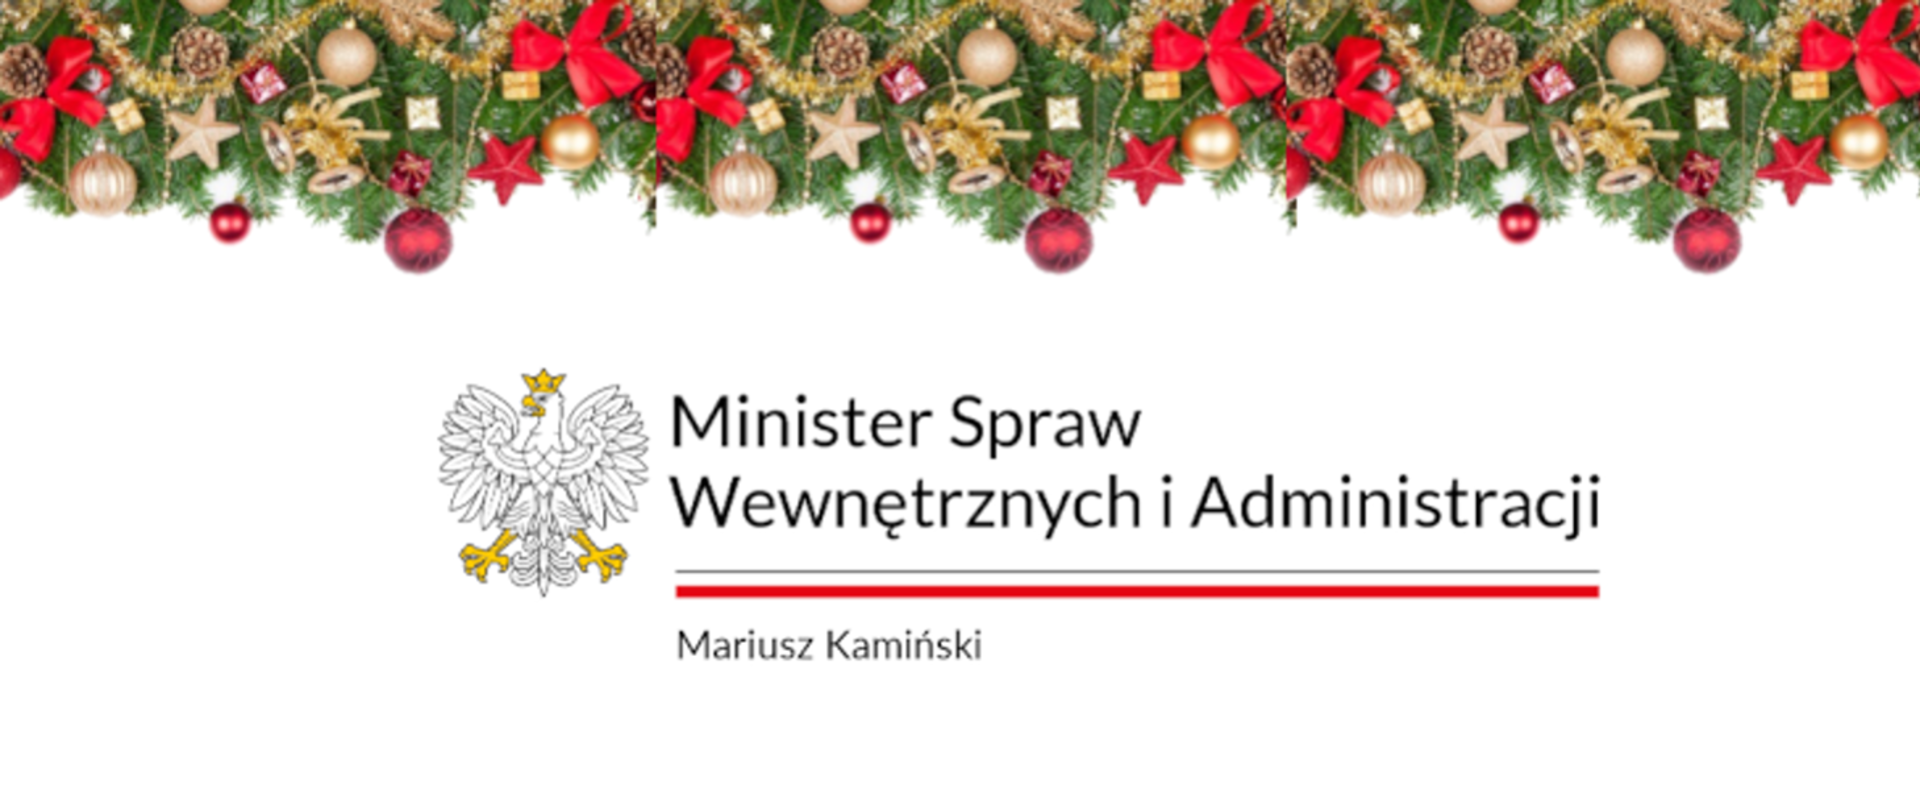 Życzenia bożonarodzeniowe Ministra Spraw Wewnętrznych